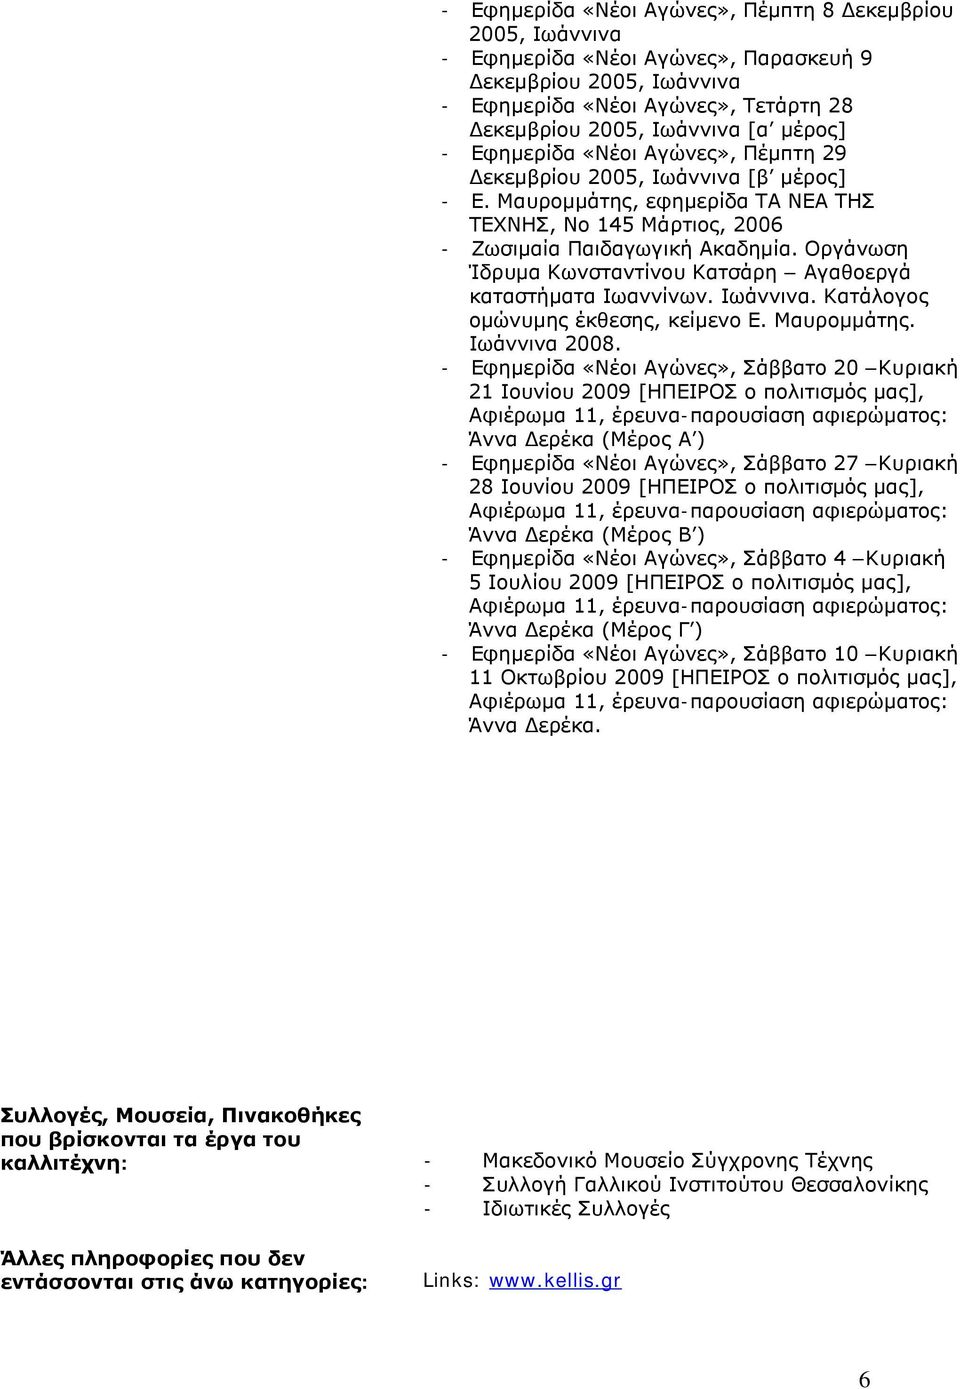 Οργάνωση Ίδρυμα Κωνσταντίνου Κατσάρη Αγαθοεργά καταστήματα Ιωαννίνων. Ιωάννινα. Κατάλογος ομώνυμης έκθεσης, κείμενο Ε. Μαυρομμάτης. Ιωάννινα 2008.